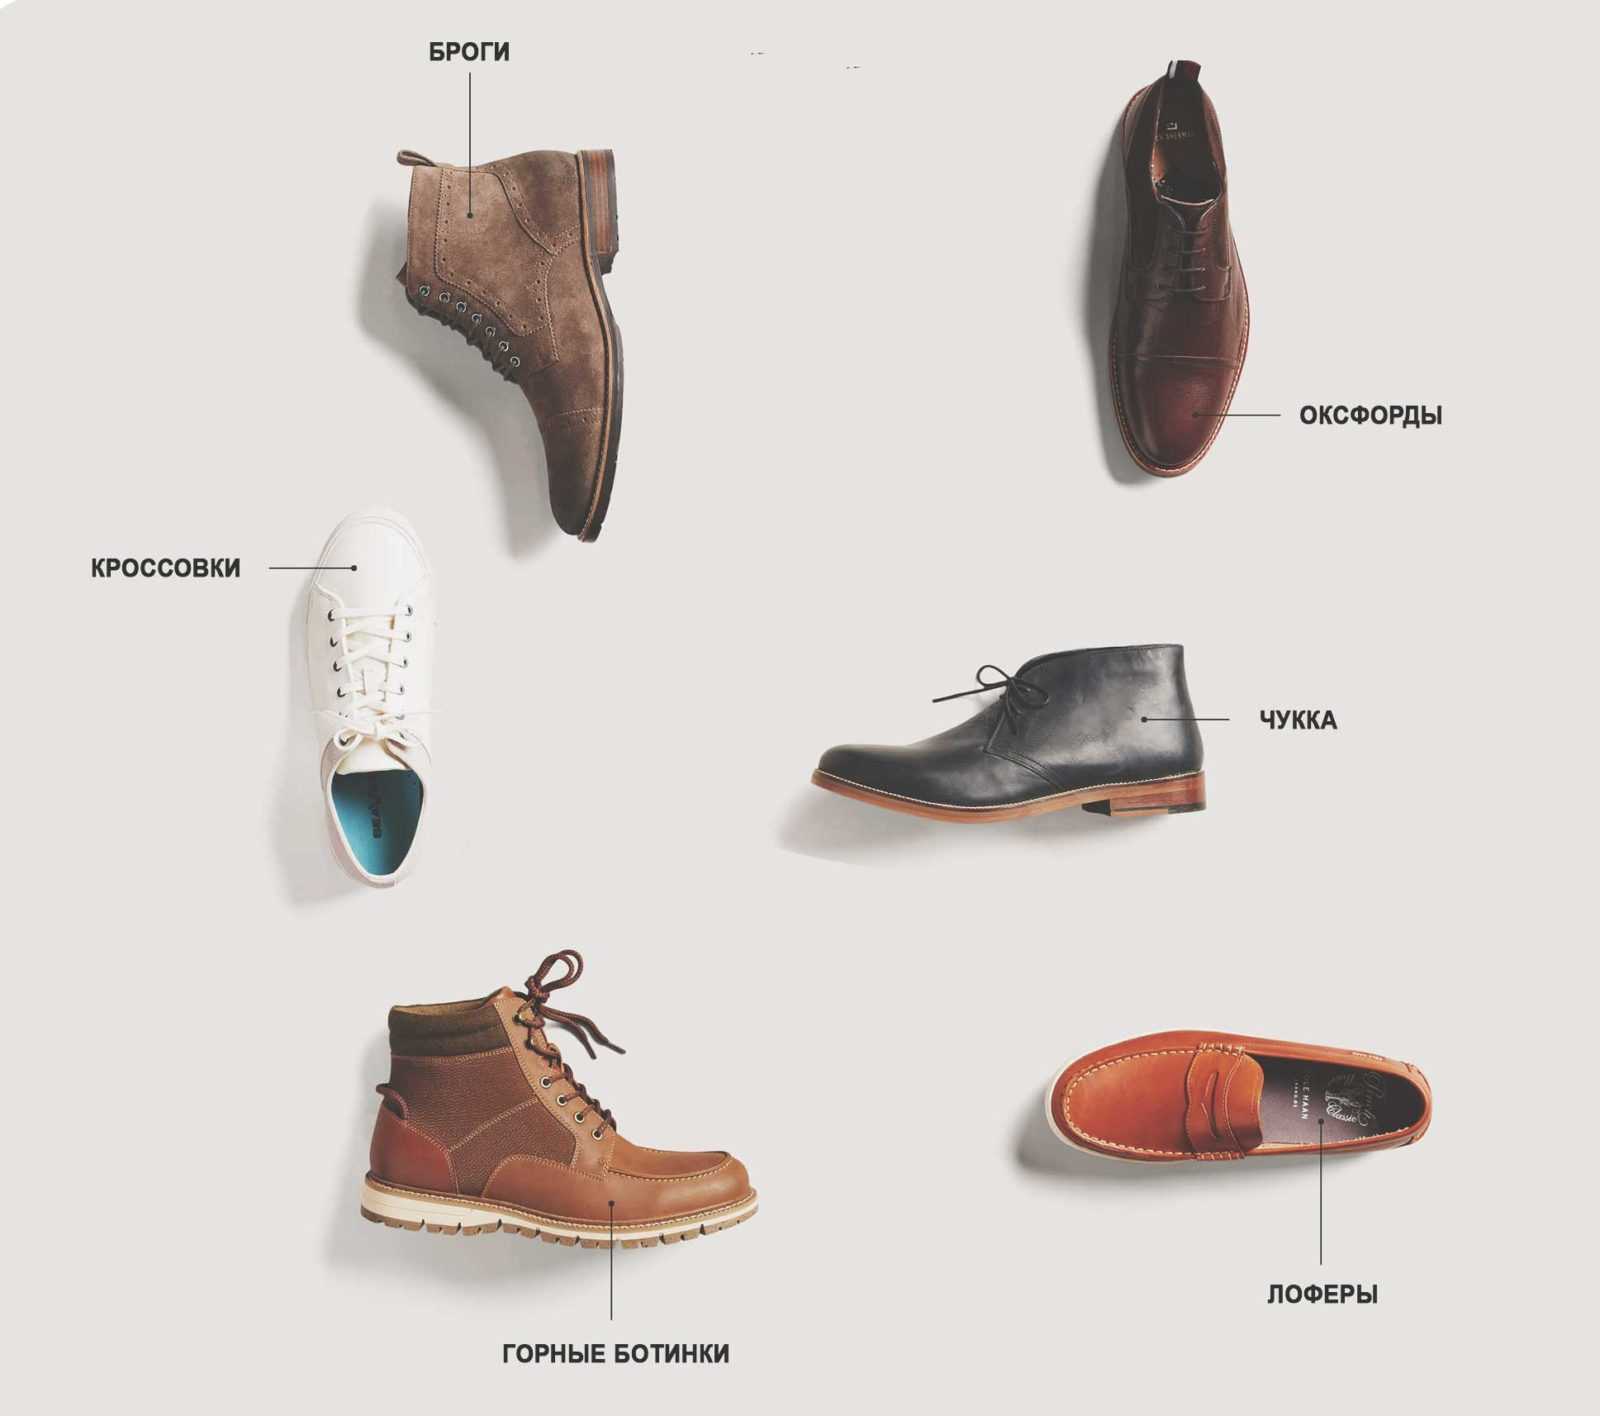 Название мужских ботинок. Формы мужской обуви. Мужская обувь названия моделей. Классификация мужской обуви.